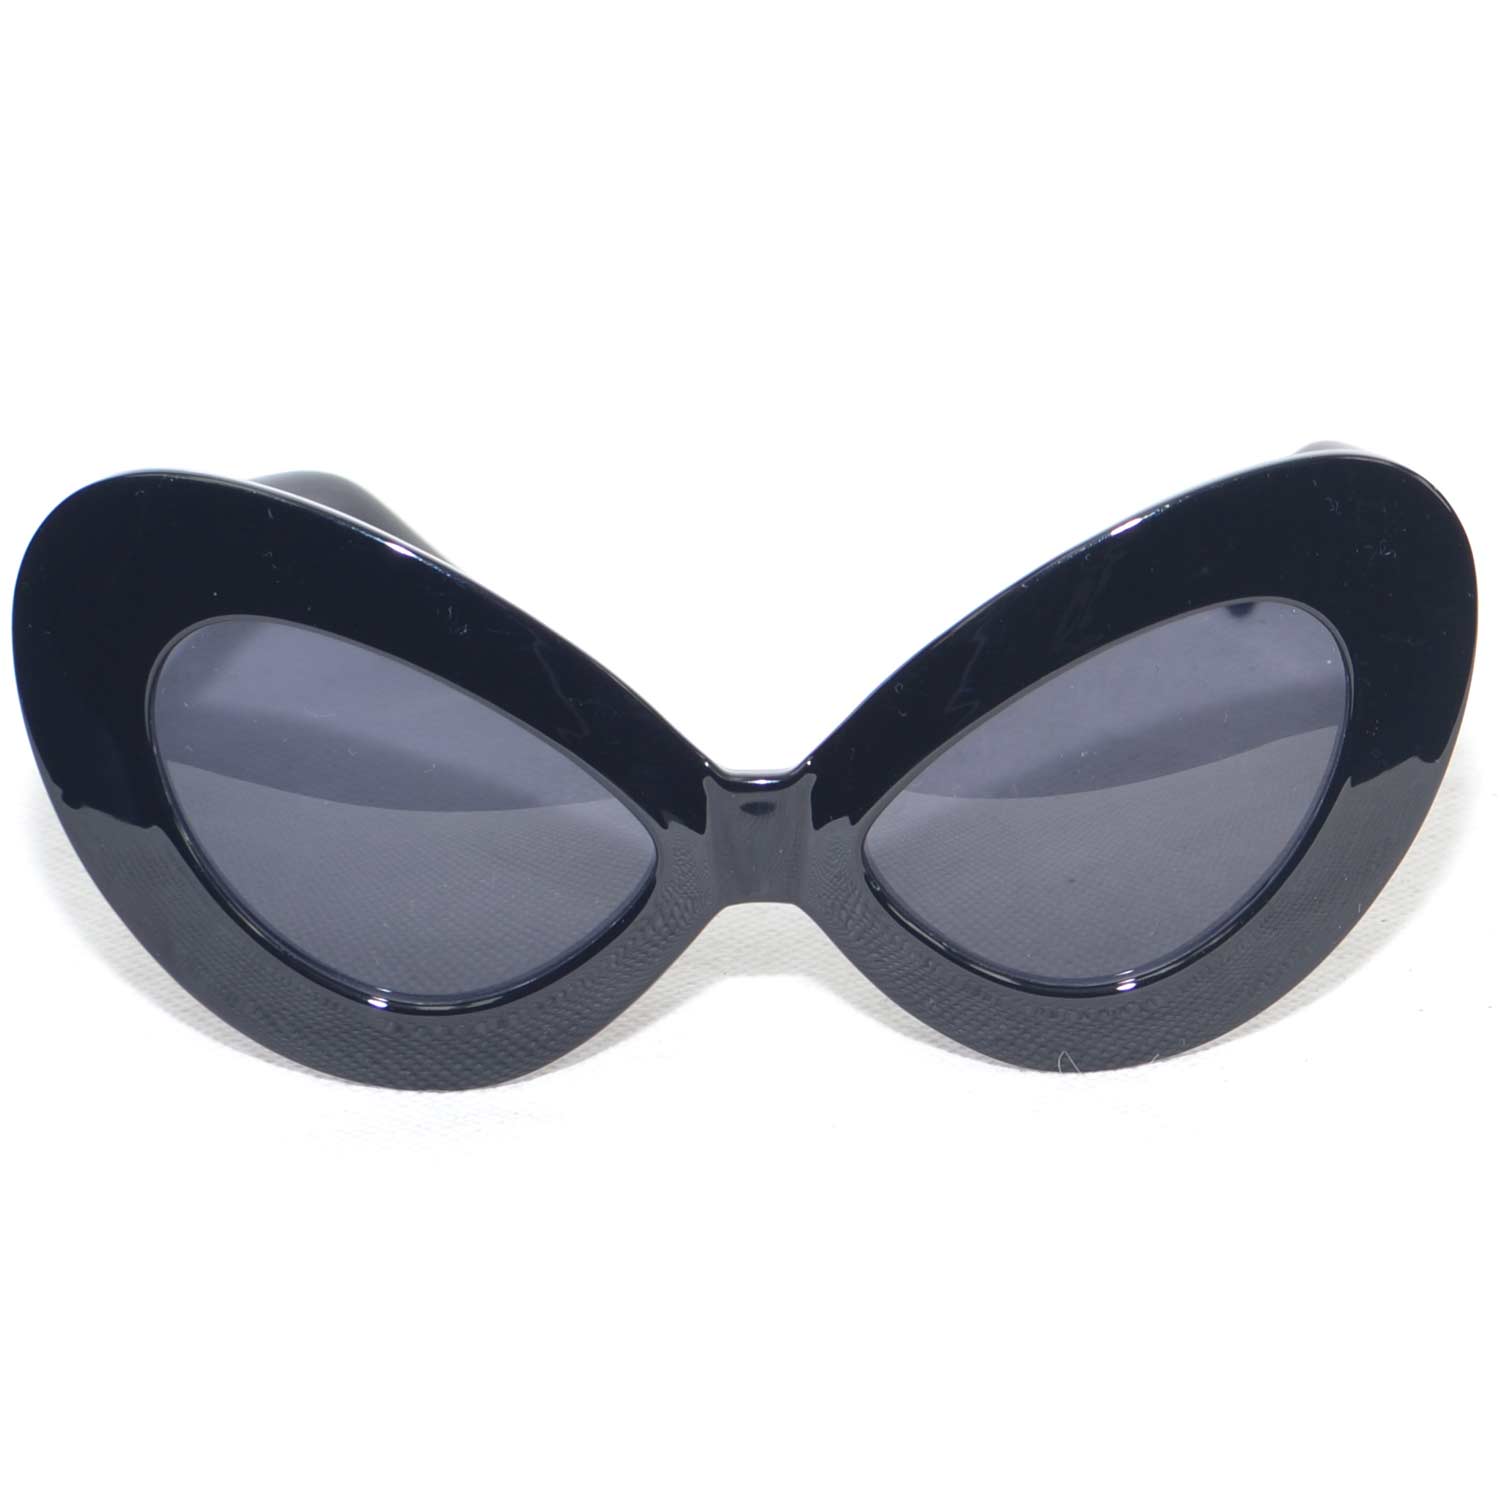 Sunglasses occhiali neri da sole donna grandi modello ferragni anni 30